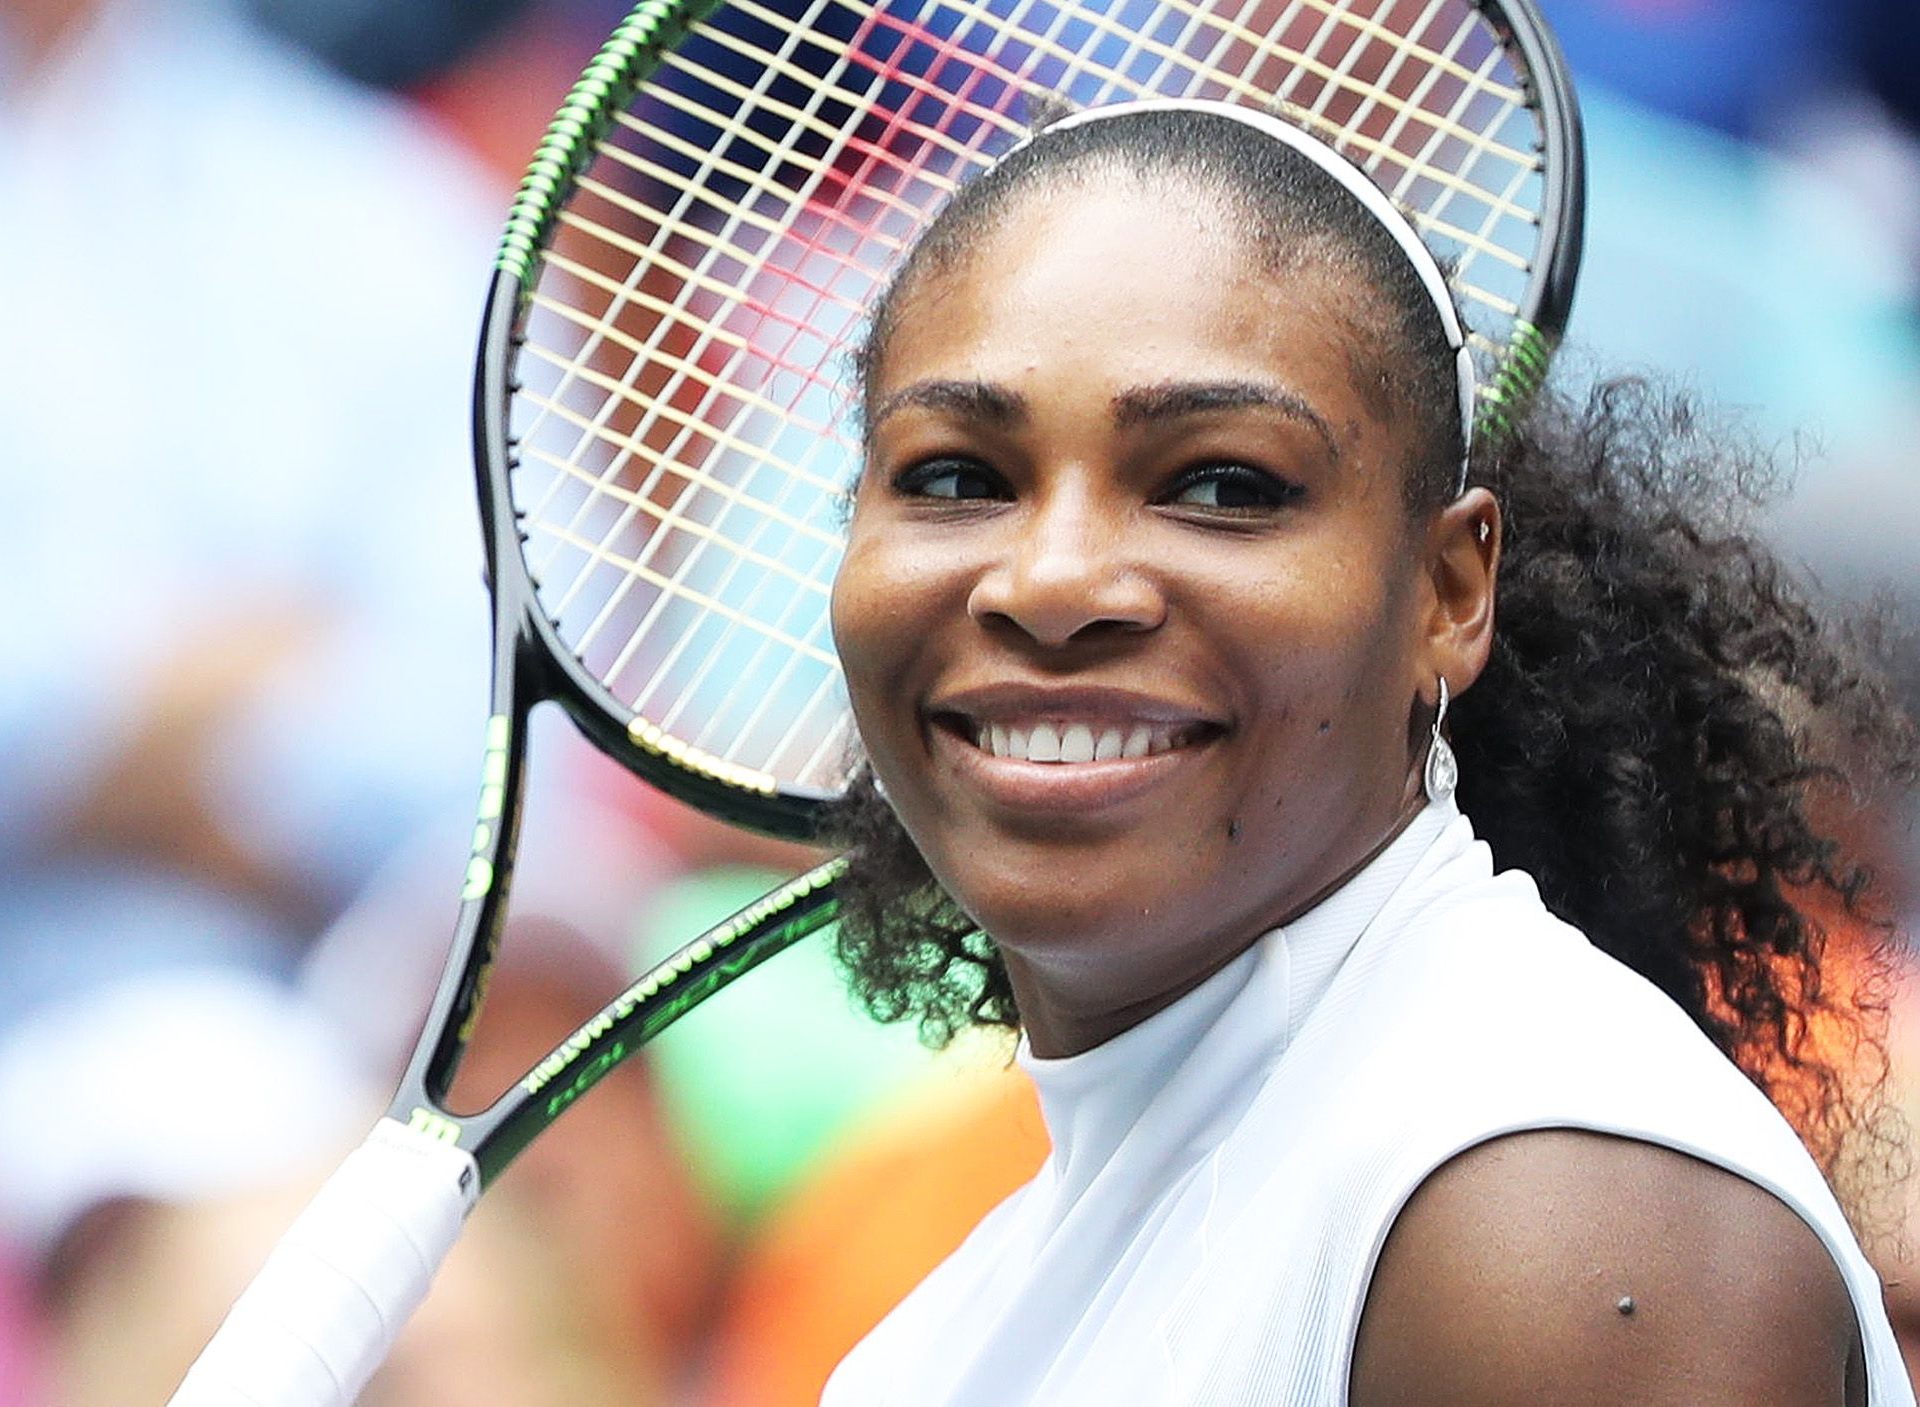 Tenistky jsou nejlépe vydělávajícími sportovkyněmi světa. Vede Serena